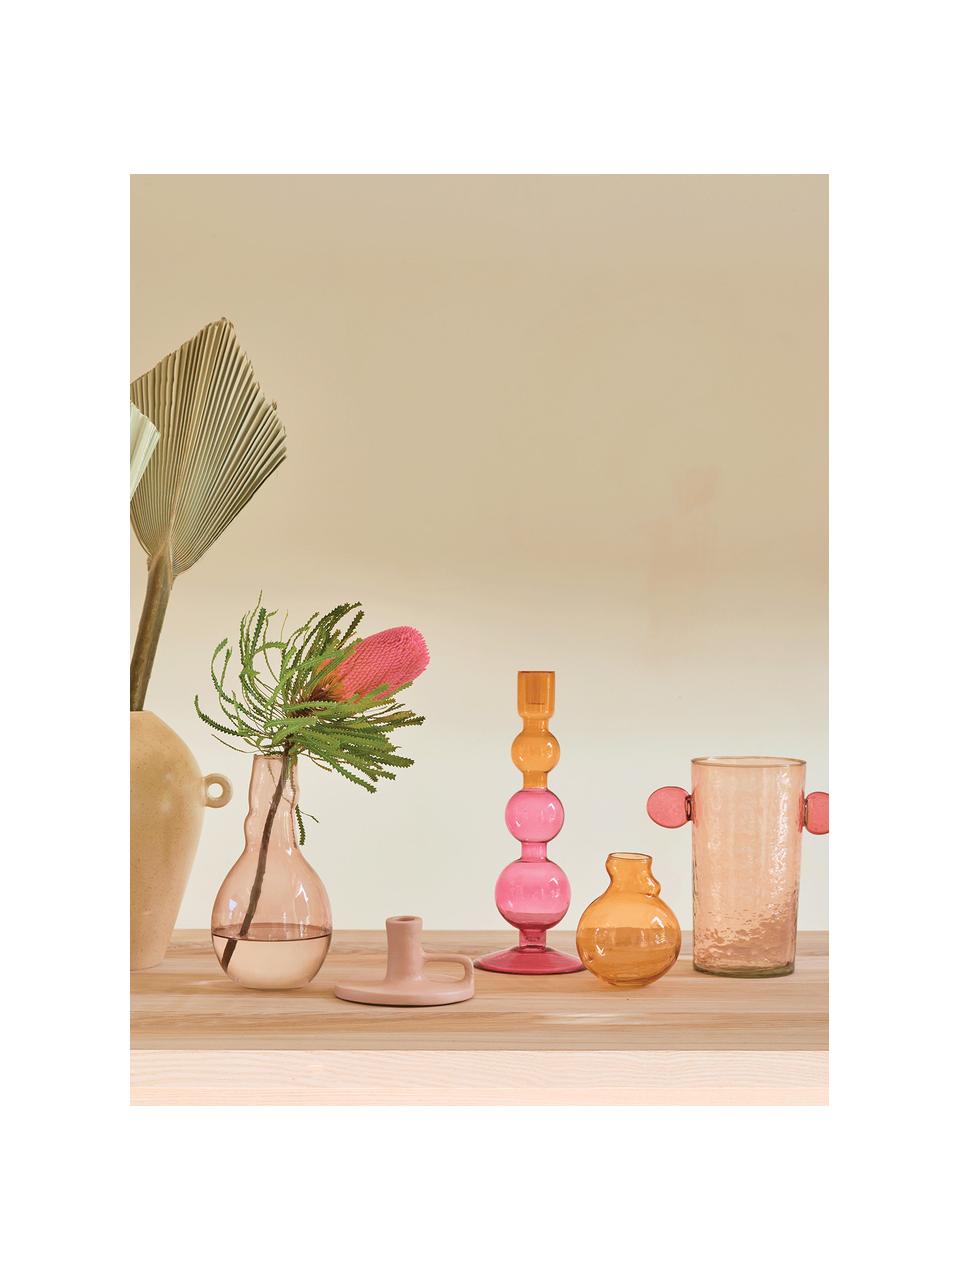 Kerzenhalter Bulb in Rosa/Orange, Recyceltes Glas, Rosa, Orange, Ø 13 x H 36 cm